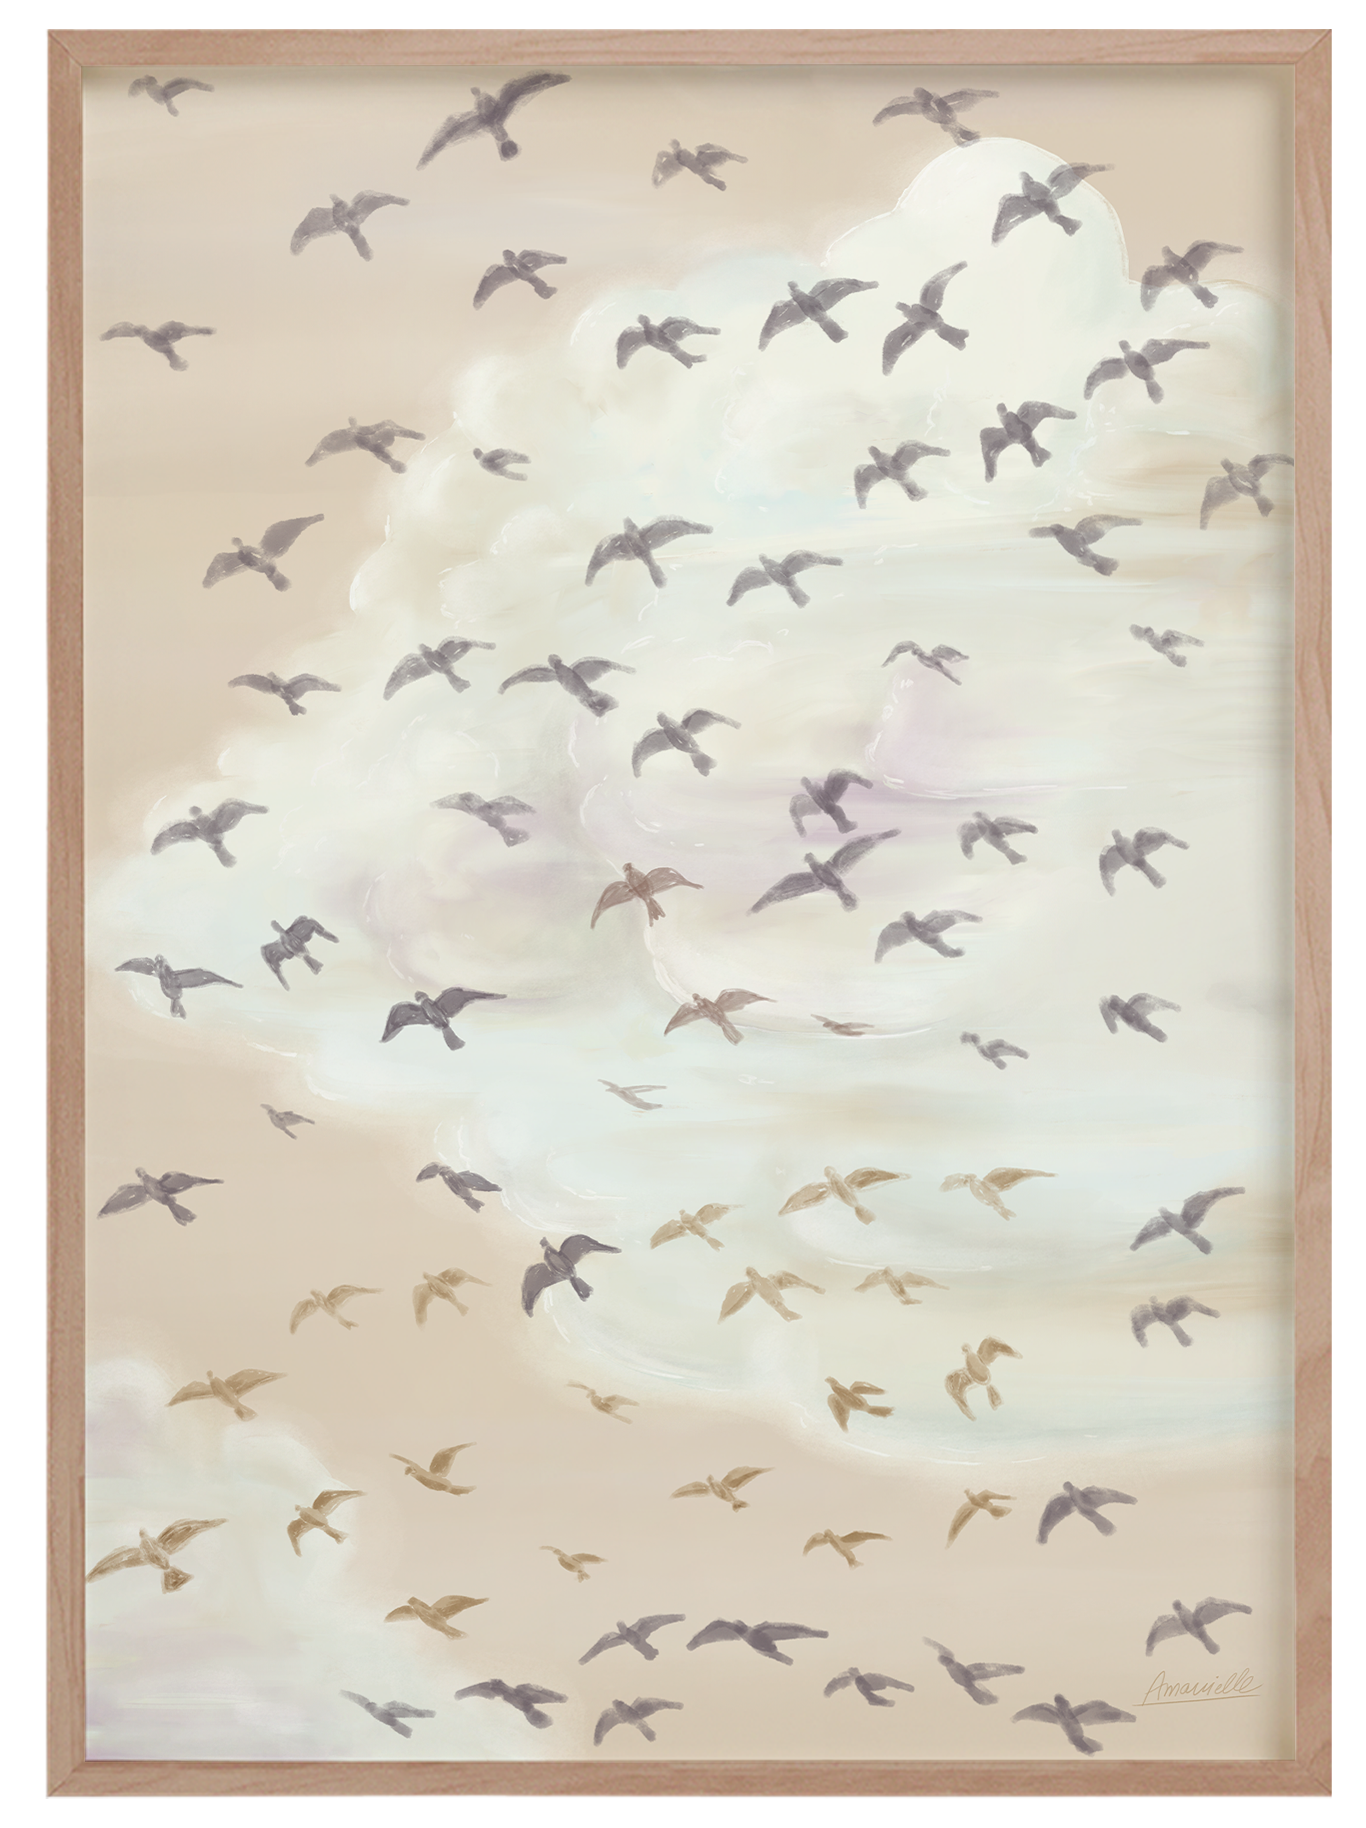 Digitales Kunstdrucke Poster im skandinavischen Stil  mit Vögeln Landhausstil Wandbild 